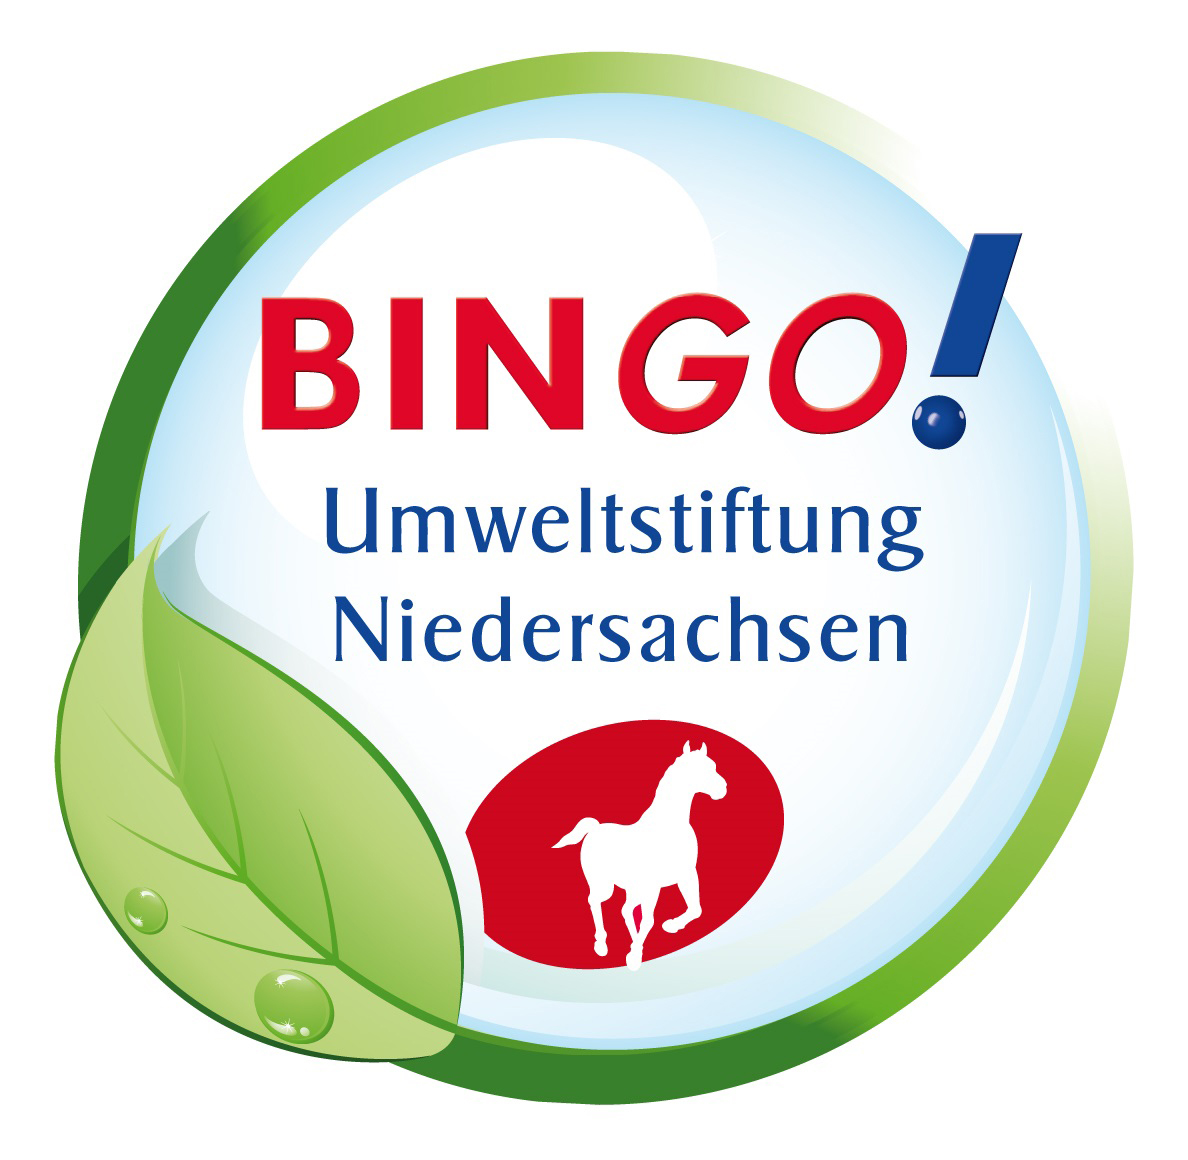 Bingo! Niedersächsische Bingo-Umweltstiftung